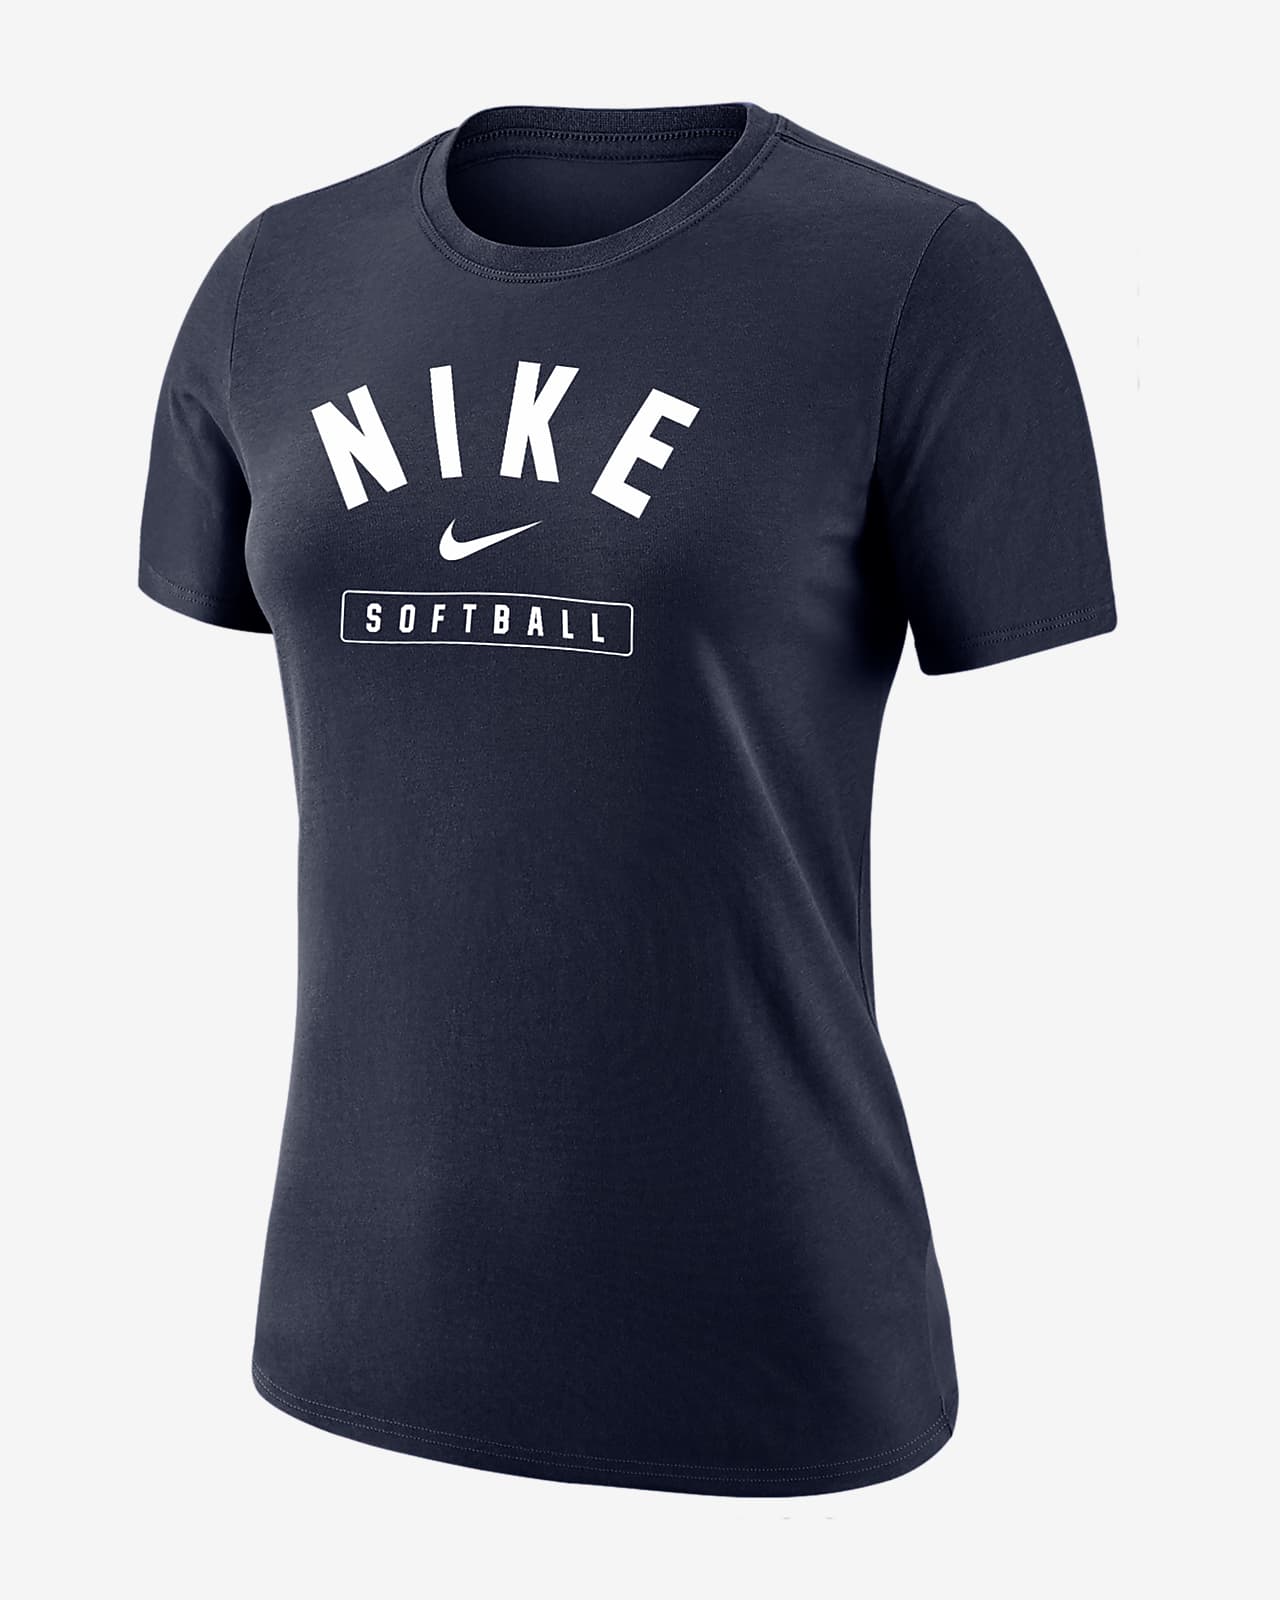 Nike Softball Women's T-Shirt